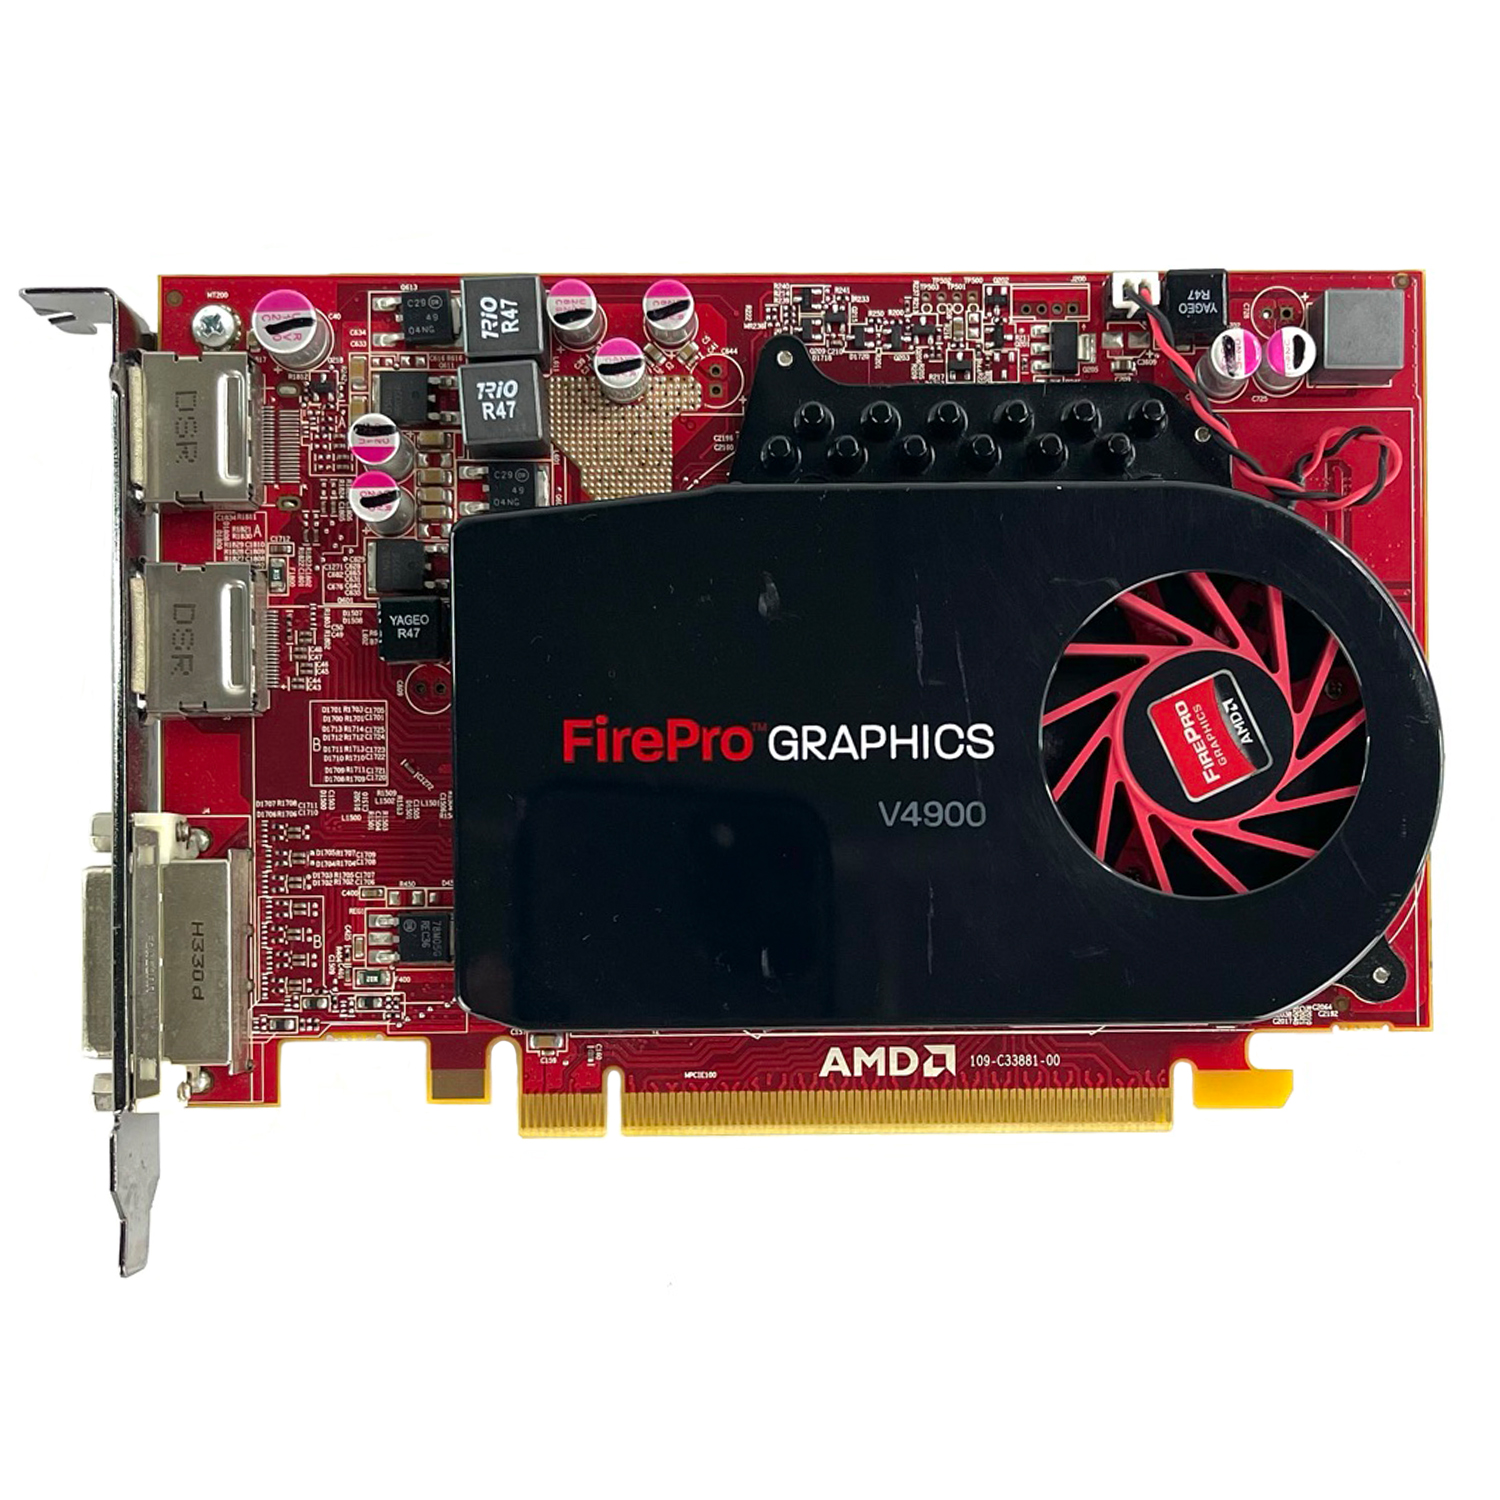 การ์ดจอทำงาน AMD Firepro V4900 1GB GDDR5 128-bit